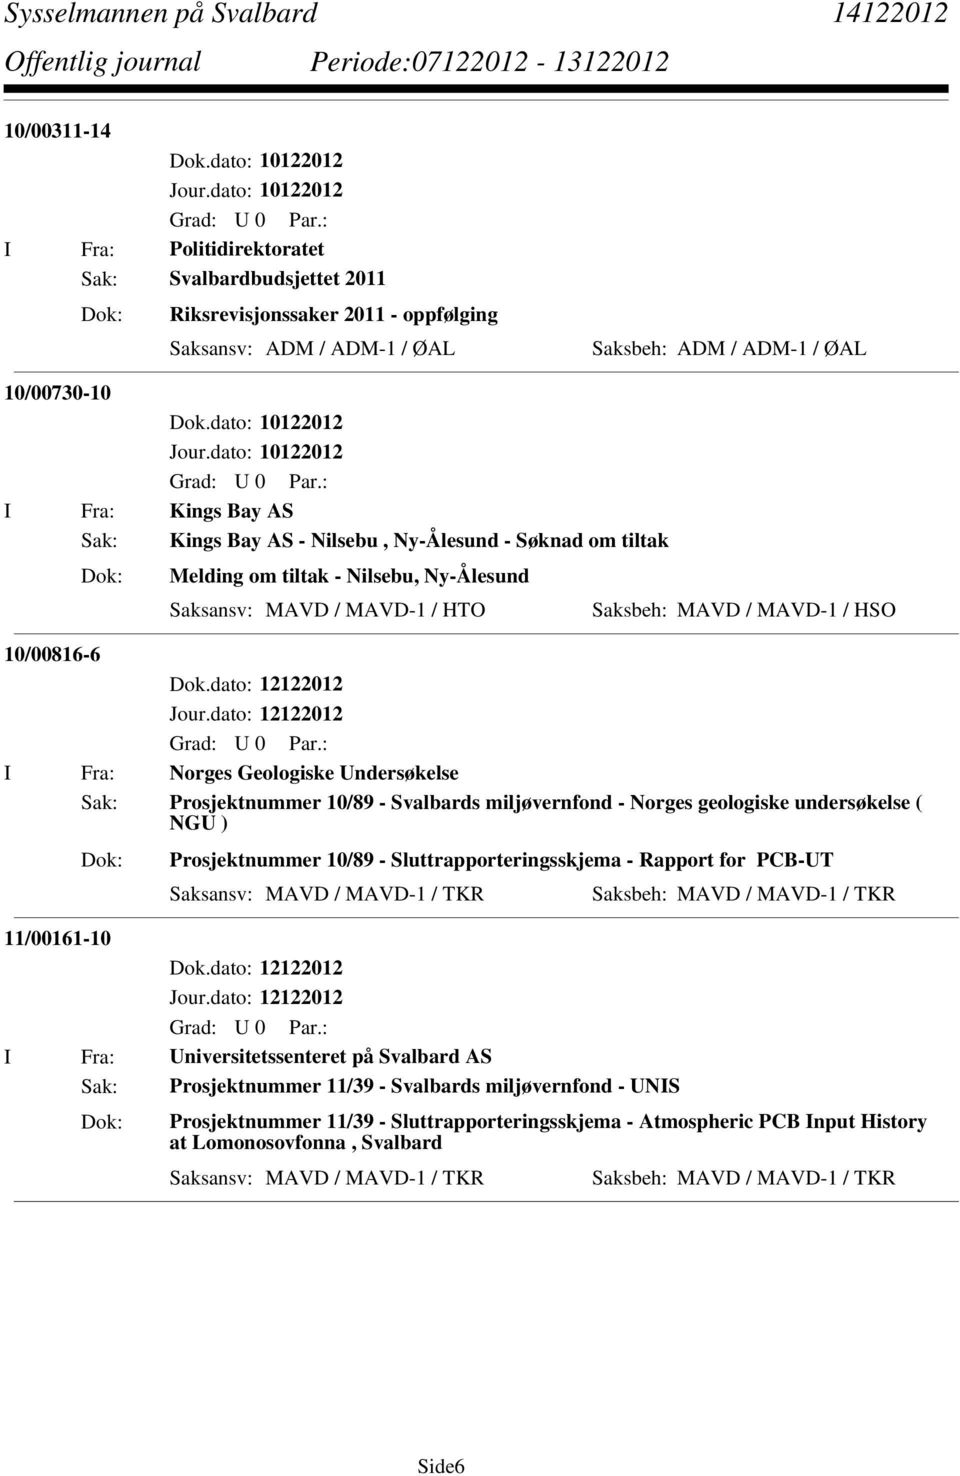 Undersøkelse Sak: Prosjektnummer 10/89 - Svalbards miljøvernfond - Norges geologiske undersøkelse ( NGU ) Prosjektnummer 10/89 - Sluttrapporteringsskjema - Rapport for PCB-UT 11/00161-10 I Fra: